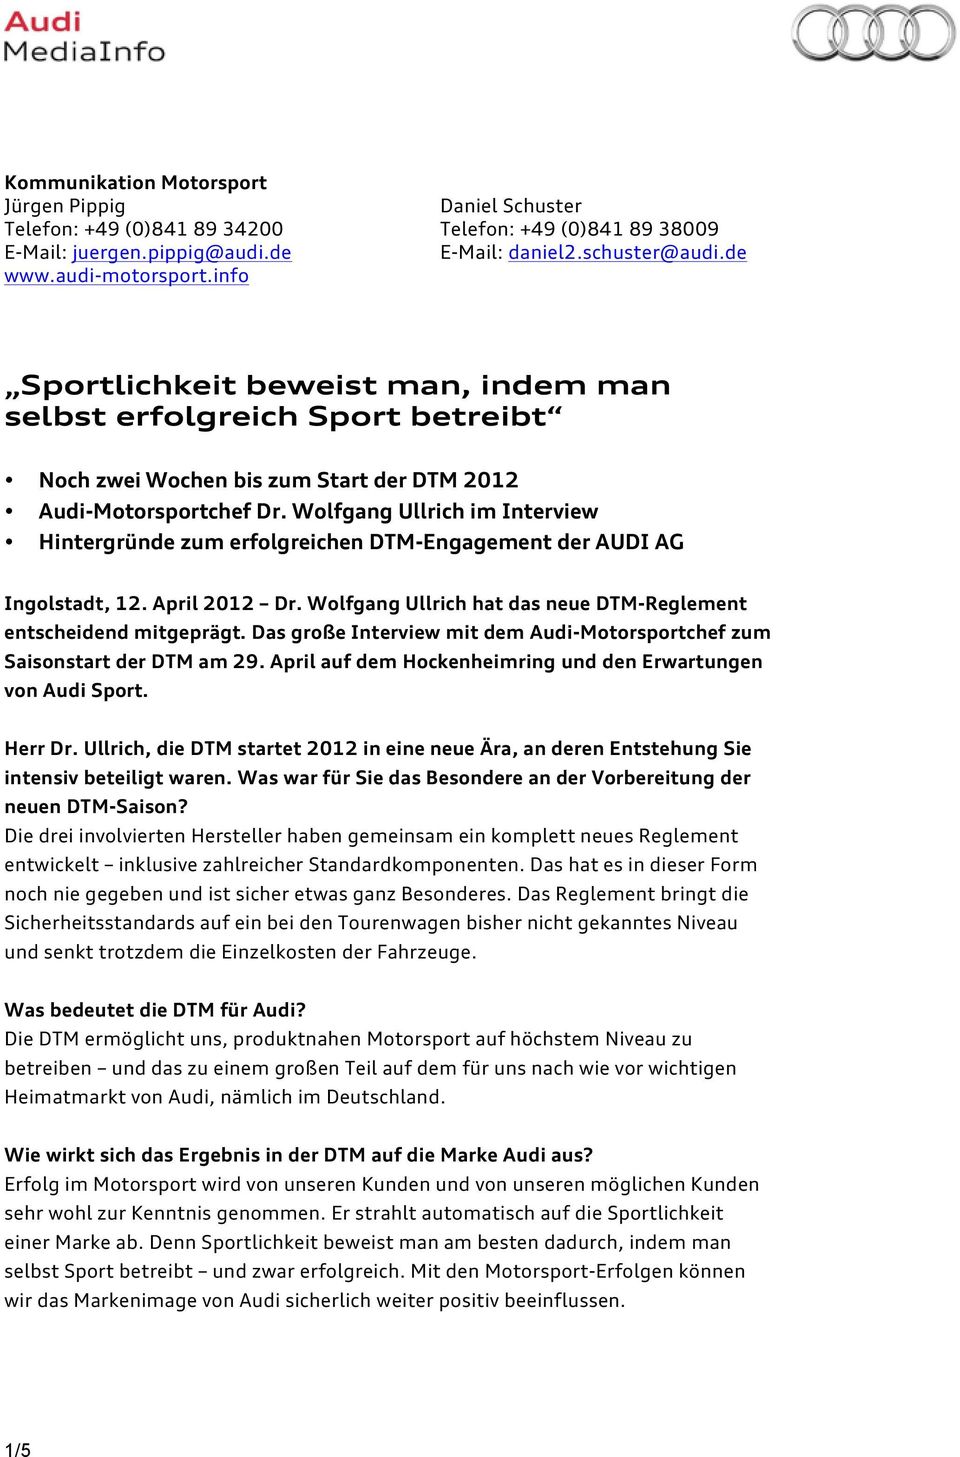 Wolfgang Ullrich im Interview Hintergründe zum erfolgreichen DTM-Engagement der AUDI AG Ingolstadt, 12. April 2012 Dr. Wolfgang Ullrich hat das neue DTM-Reglement entscheidend mitgeprägt.